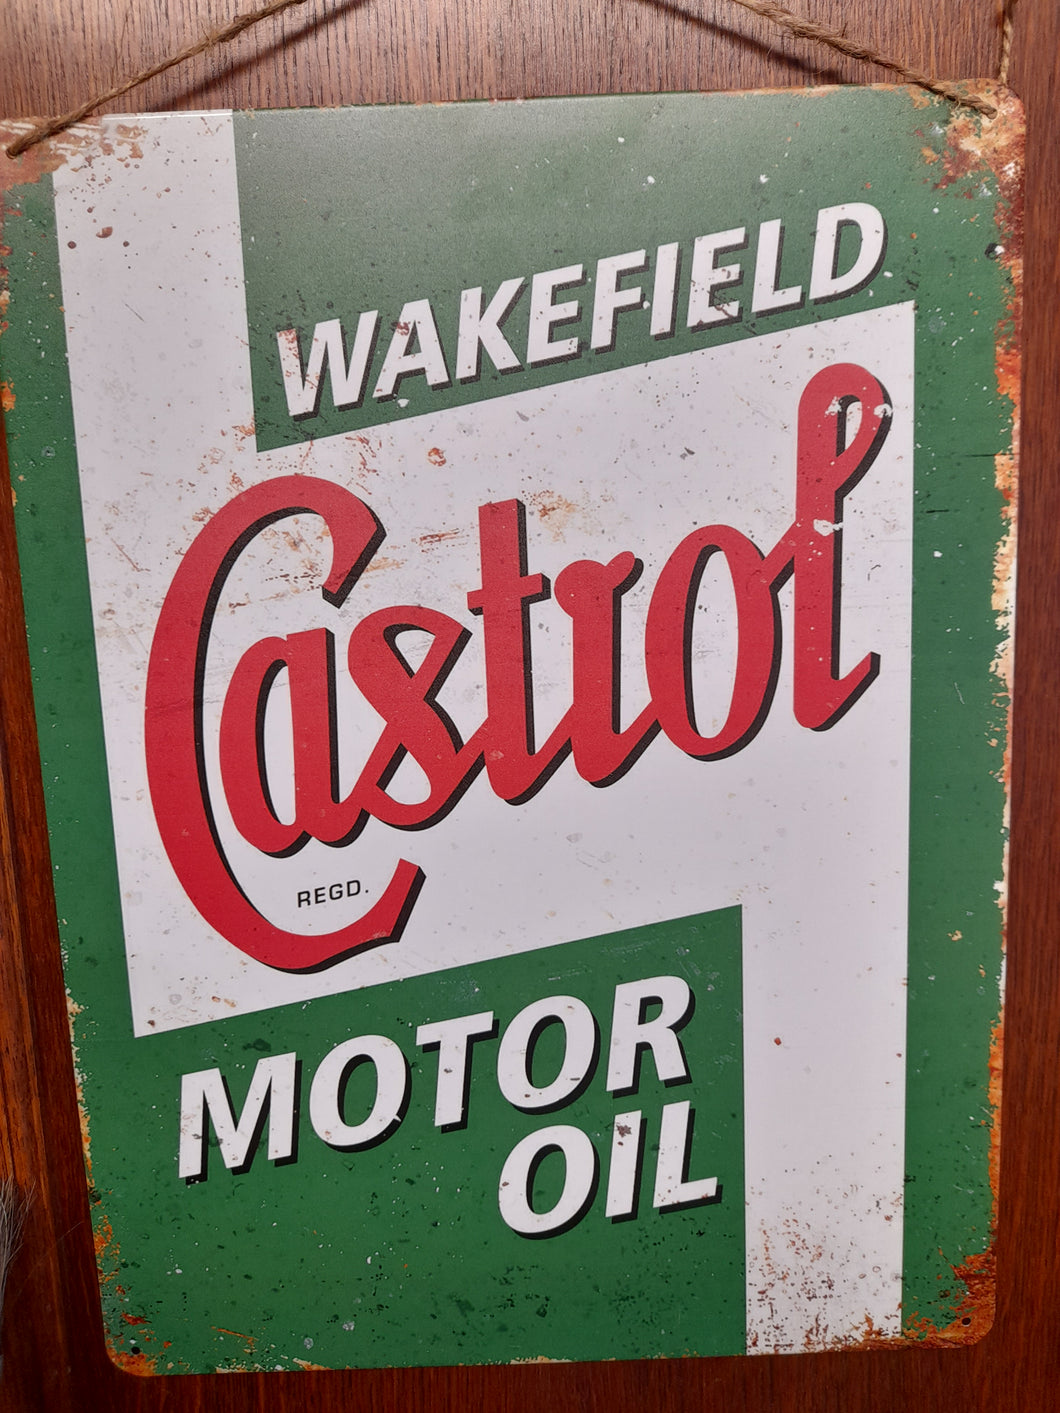 Castrol Motor Oil vintage style metal sign